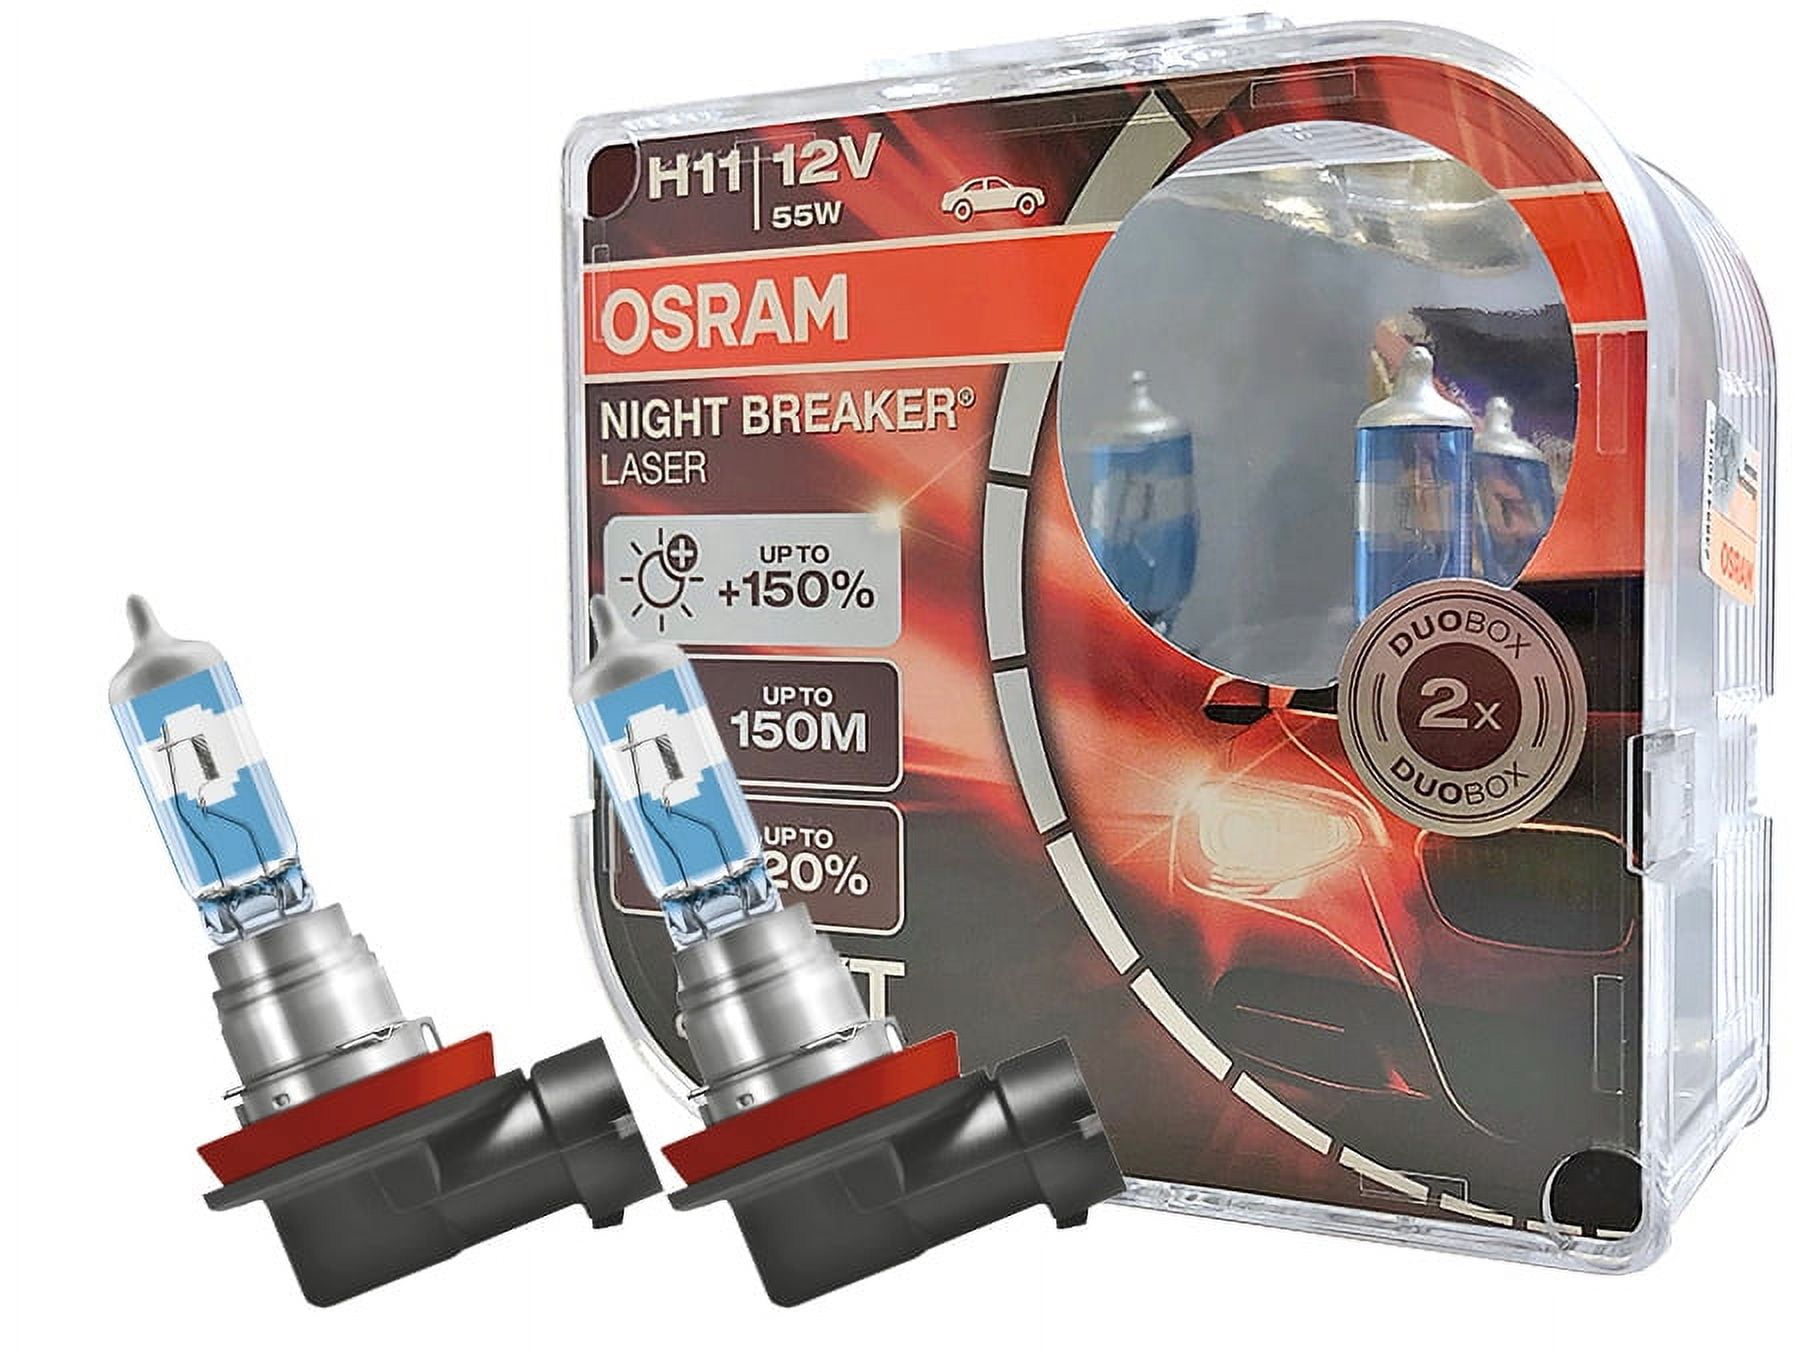 OSRAM Night Breaker Plus vs Regular OSRAM Review (Foglights + Headlights) 